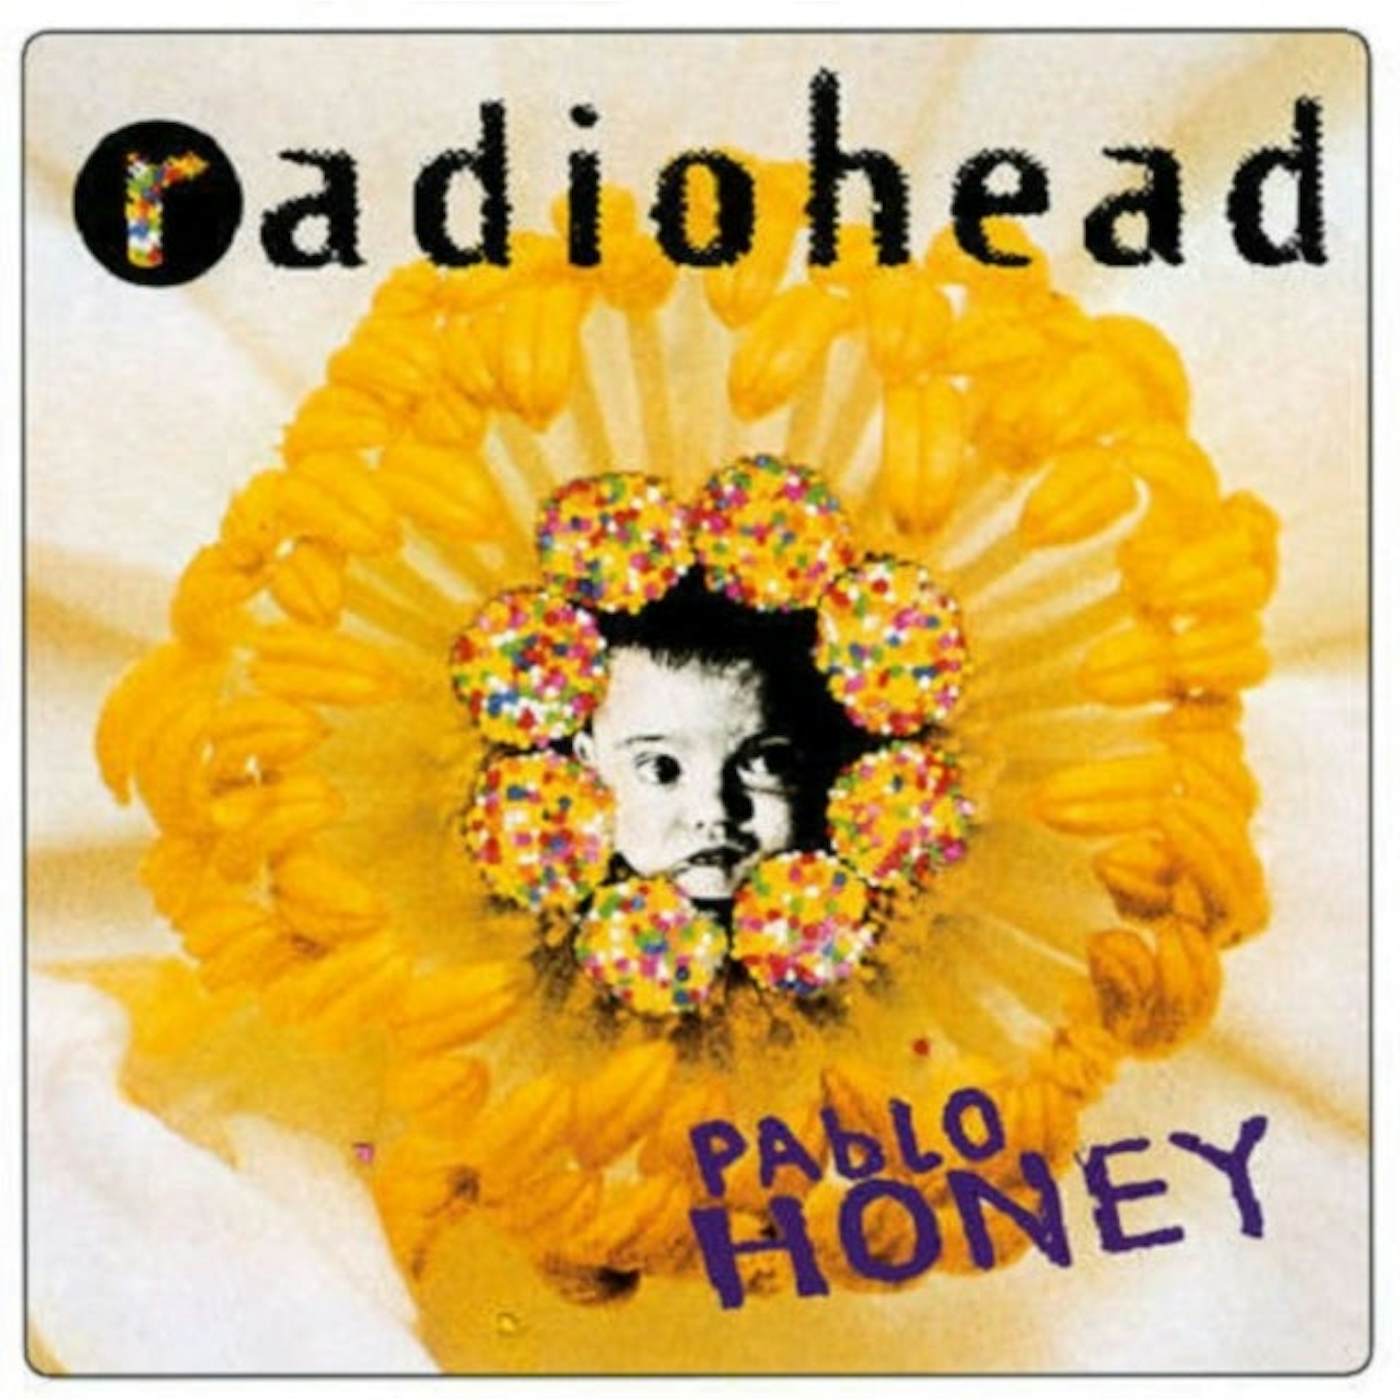 Radiohead LP Vinyl Record - Pablo Honey